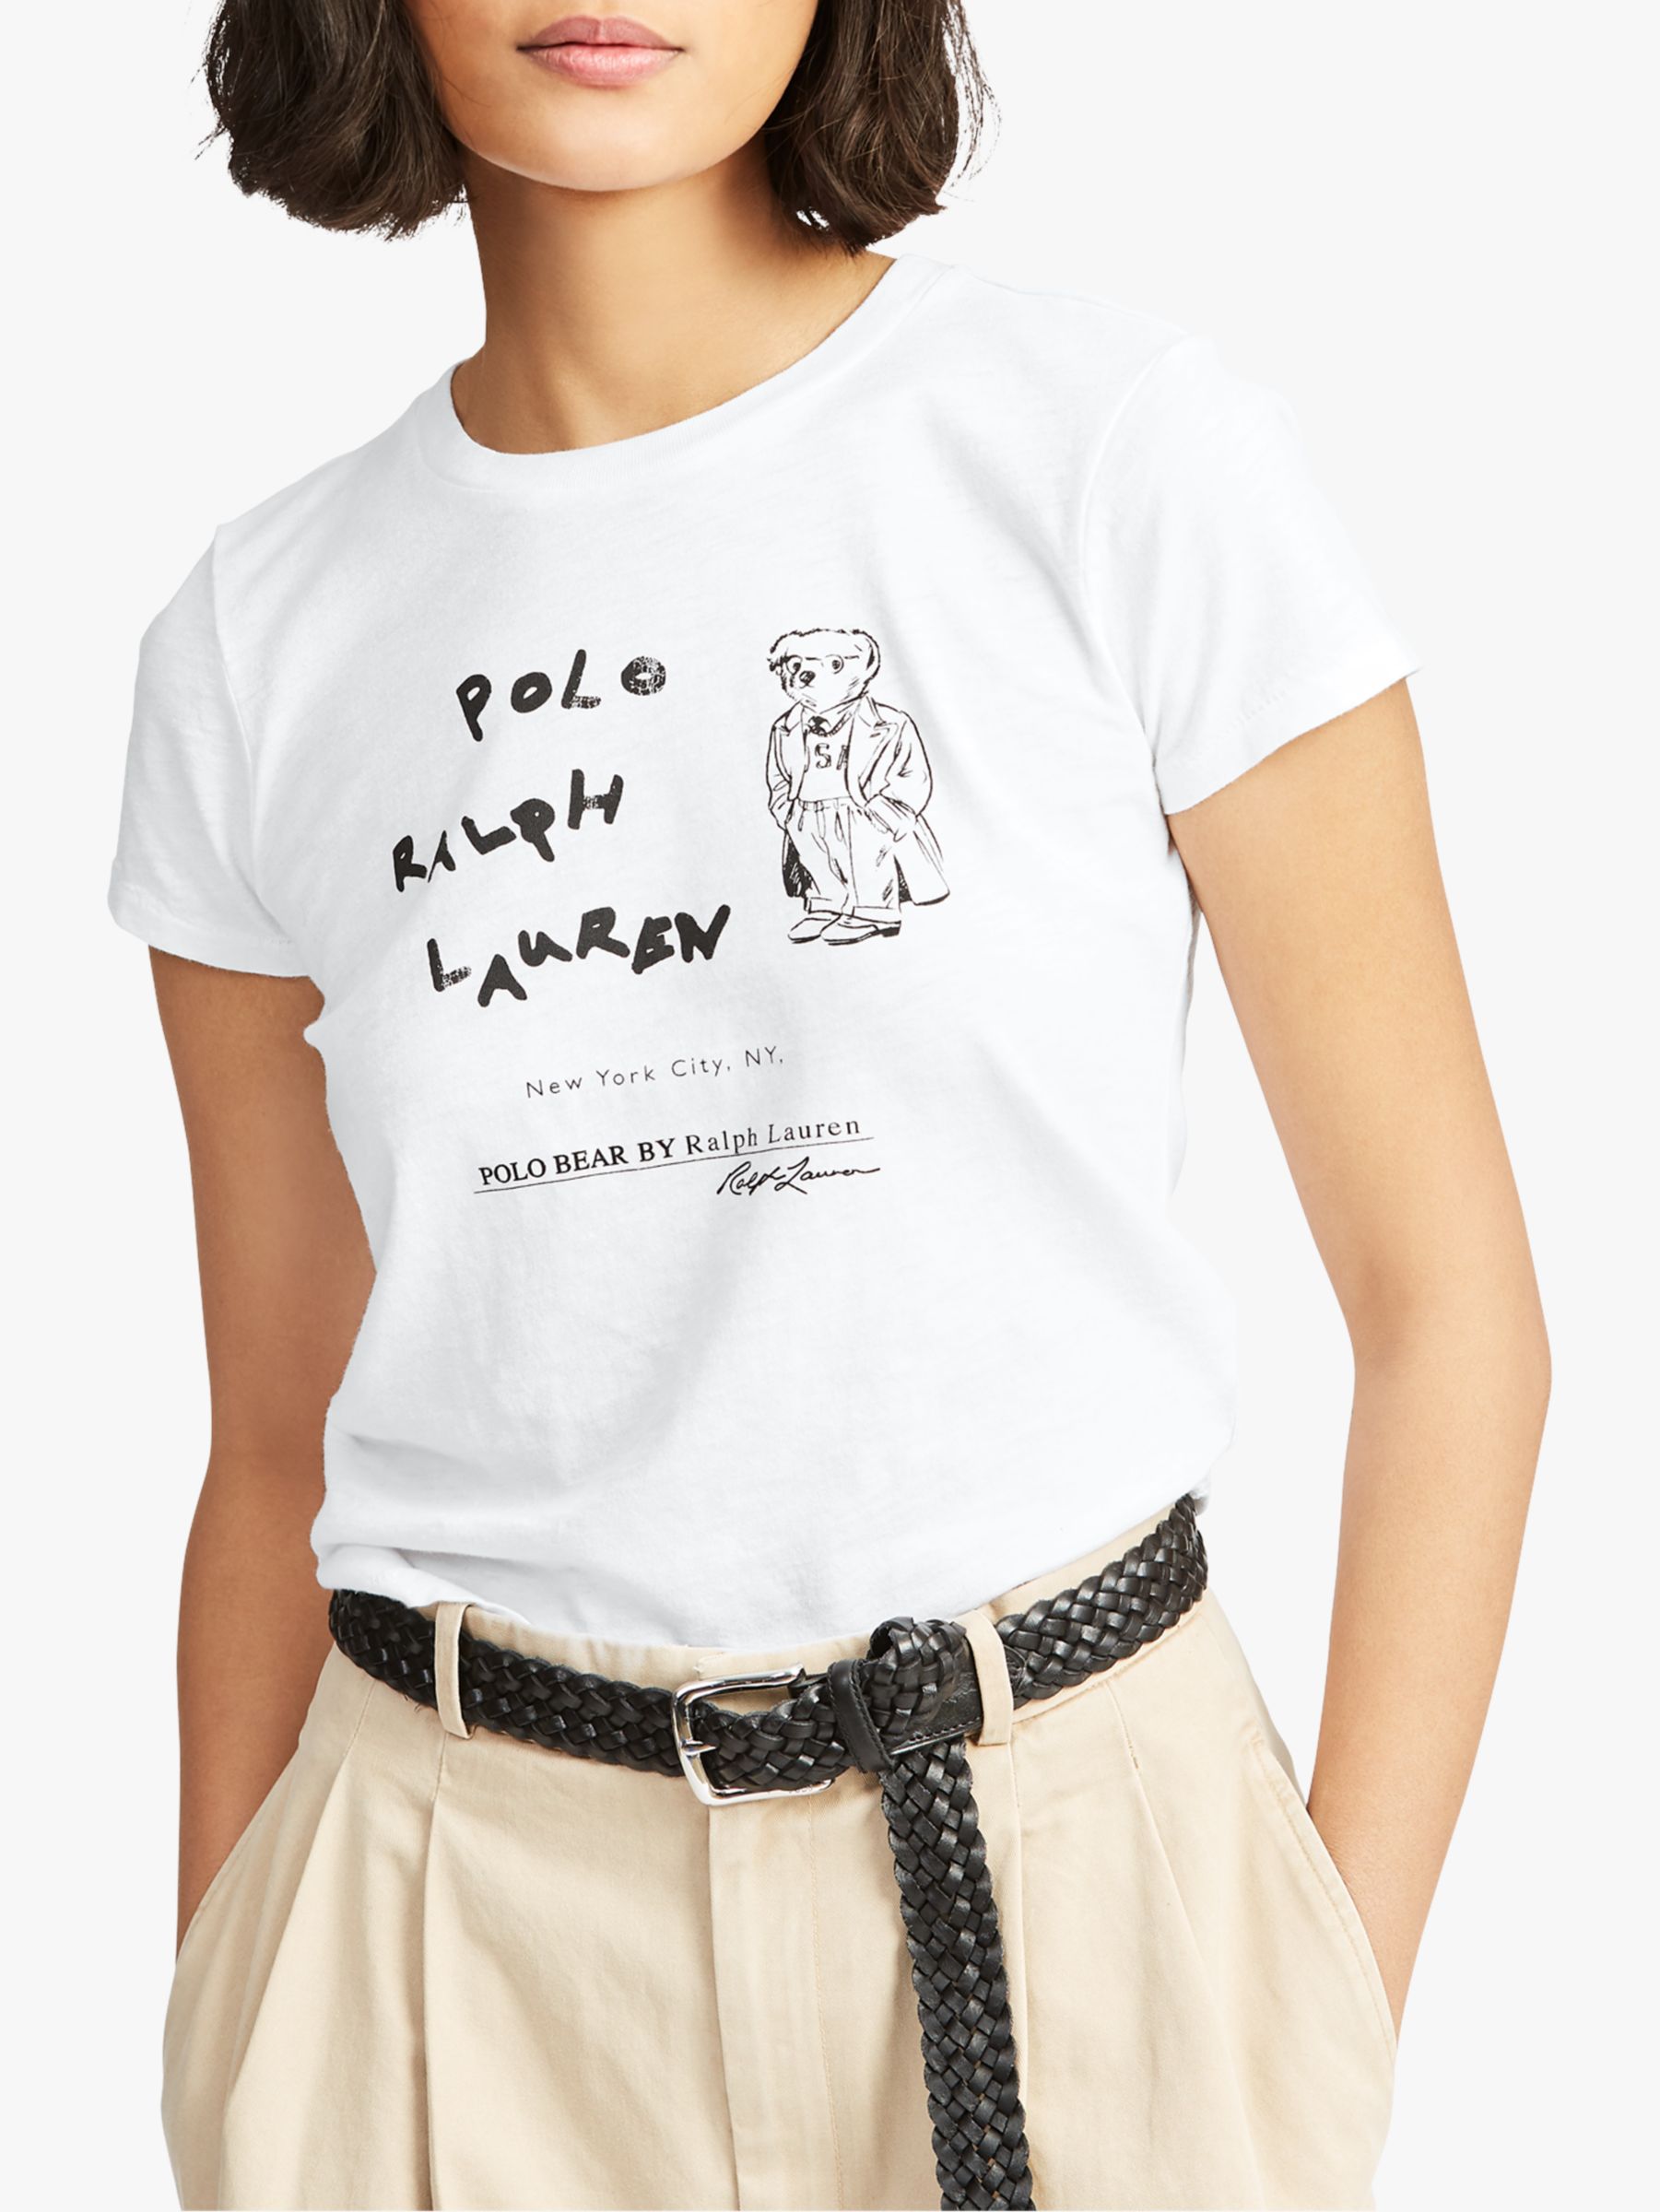 polo bear shirt women's